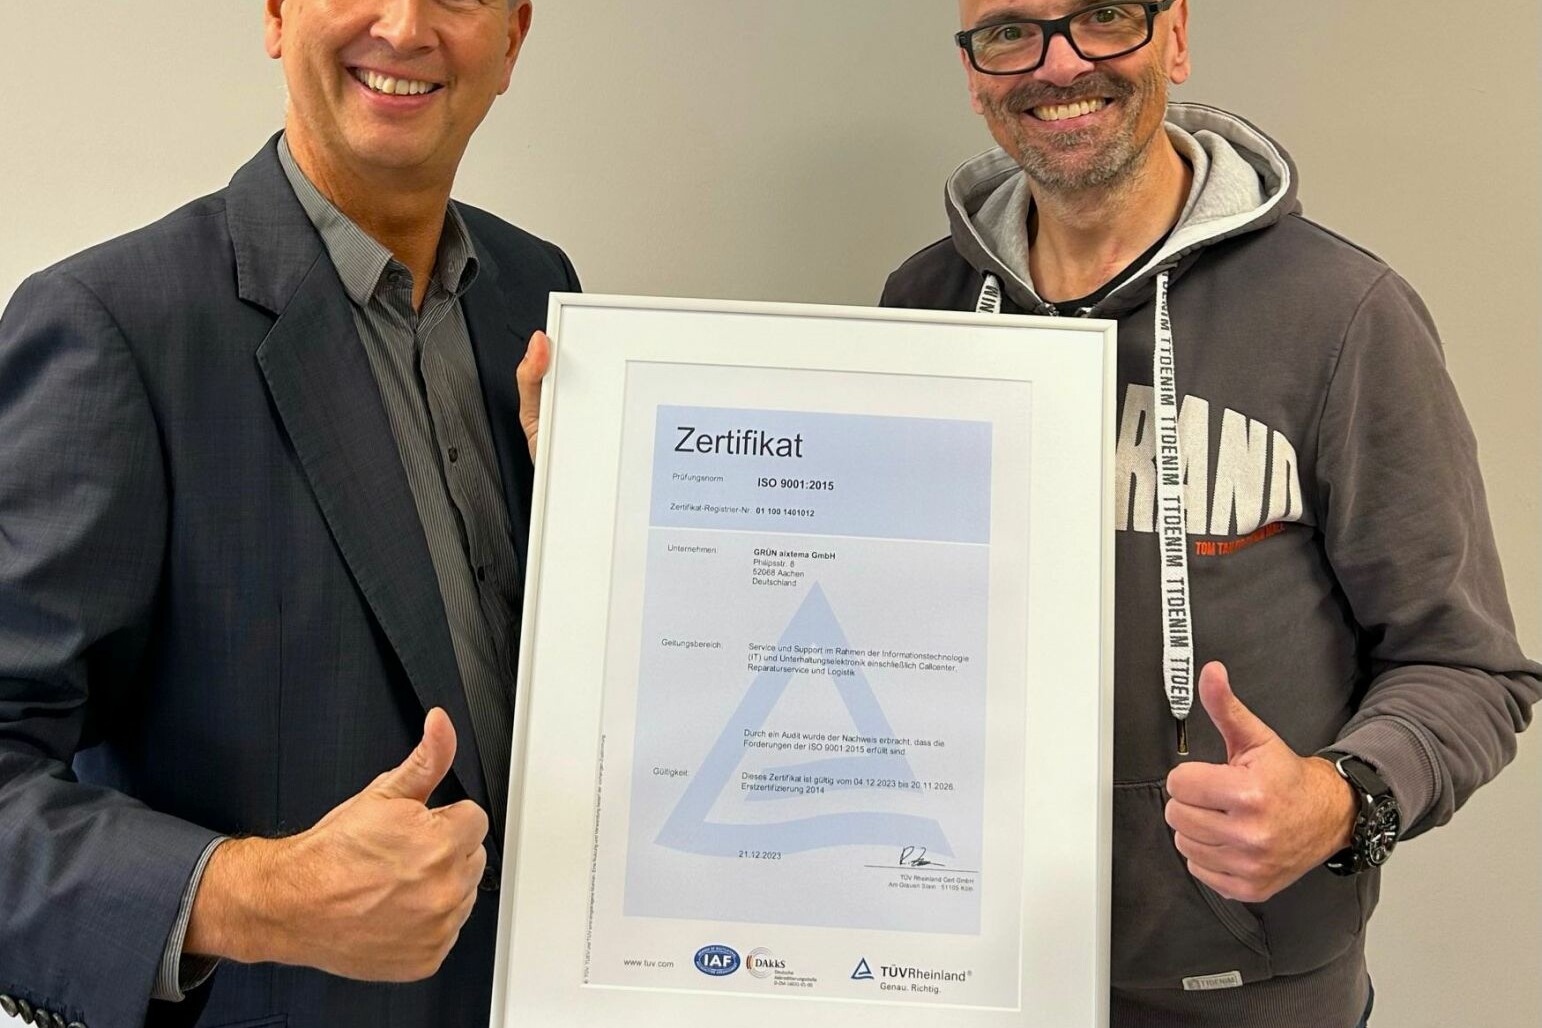 Der TÜV Rheinland, vertreten durch Ralph Freude (links), überreicht Oliver Roßbruch, CEO der GRÜN aixtema GmbH, das DIN ISO 9001:2015 Zertifikat.